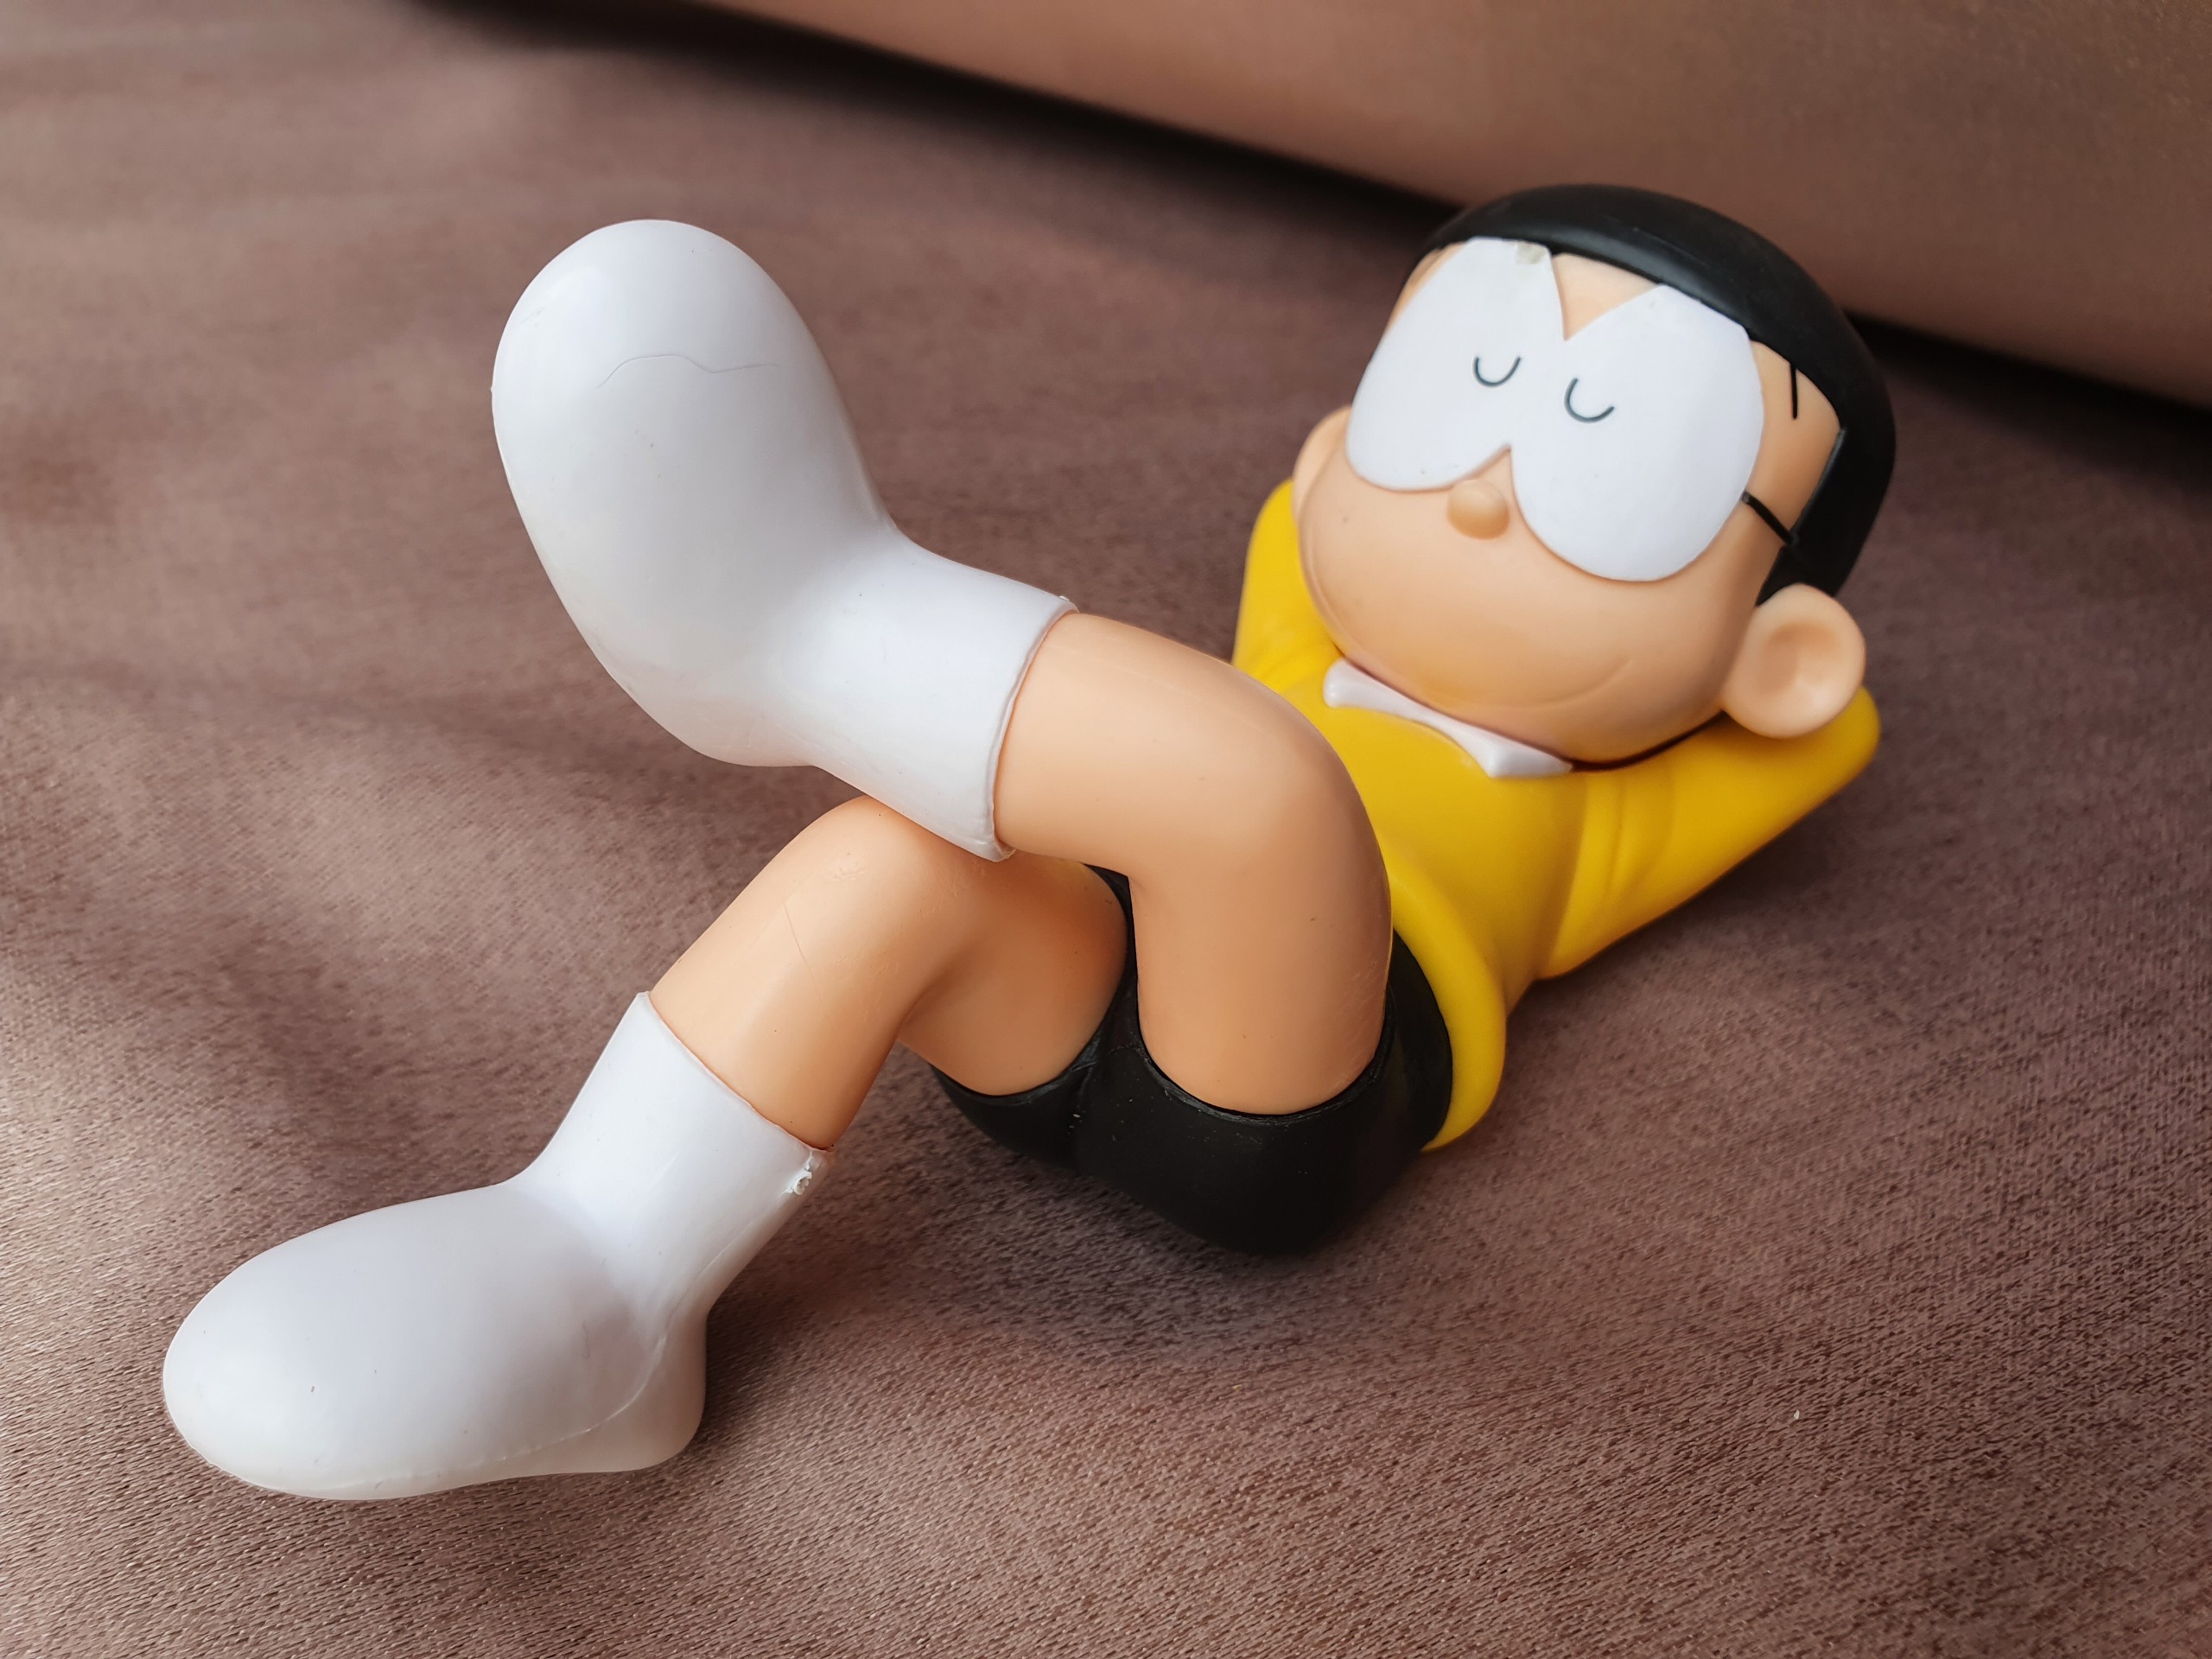 Mô Hình Nobi Nobita Nằm Lười Biếng: Giới thiệu đến bạn Mô Hình Nobi Nobita Nằm Lười Biếng - đảm bảo sẽ mang lại cho bạn những phút giây thư giãn thú vị cùng chú thú nhỏ trong bề ngoài khá lười biếng của mình. Vì sao không sắm cho mình một chiếc và cùng tận hưởng không gian xanh tươi trong căn phòng cùng Nobita nhỉ?